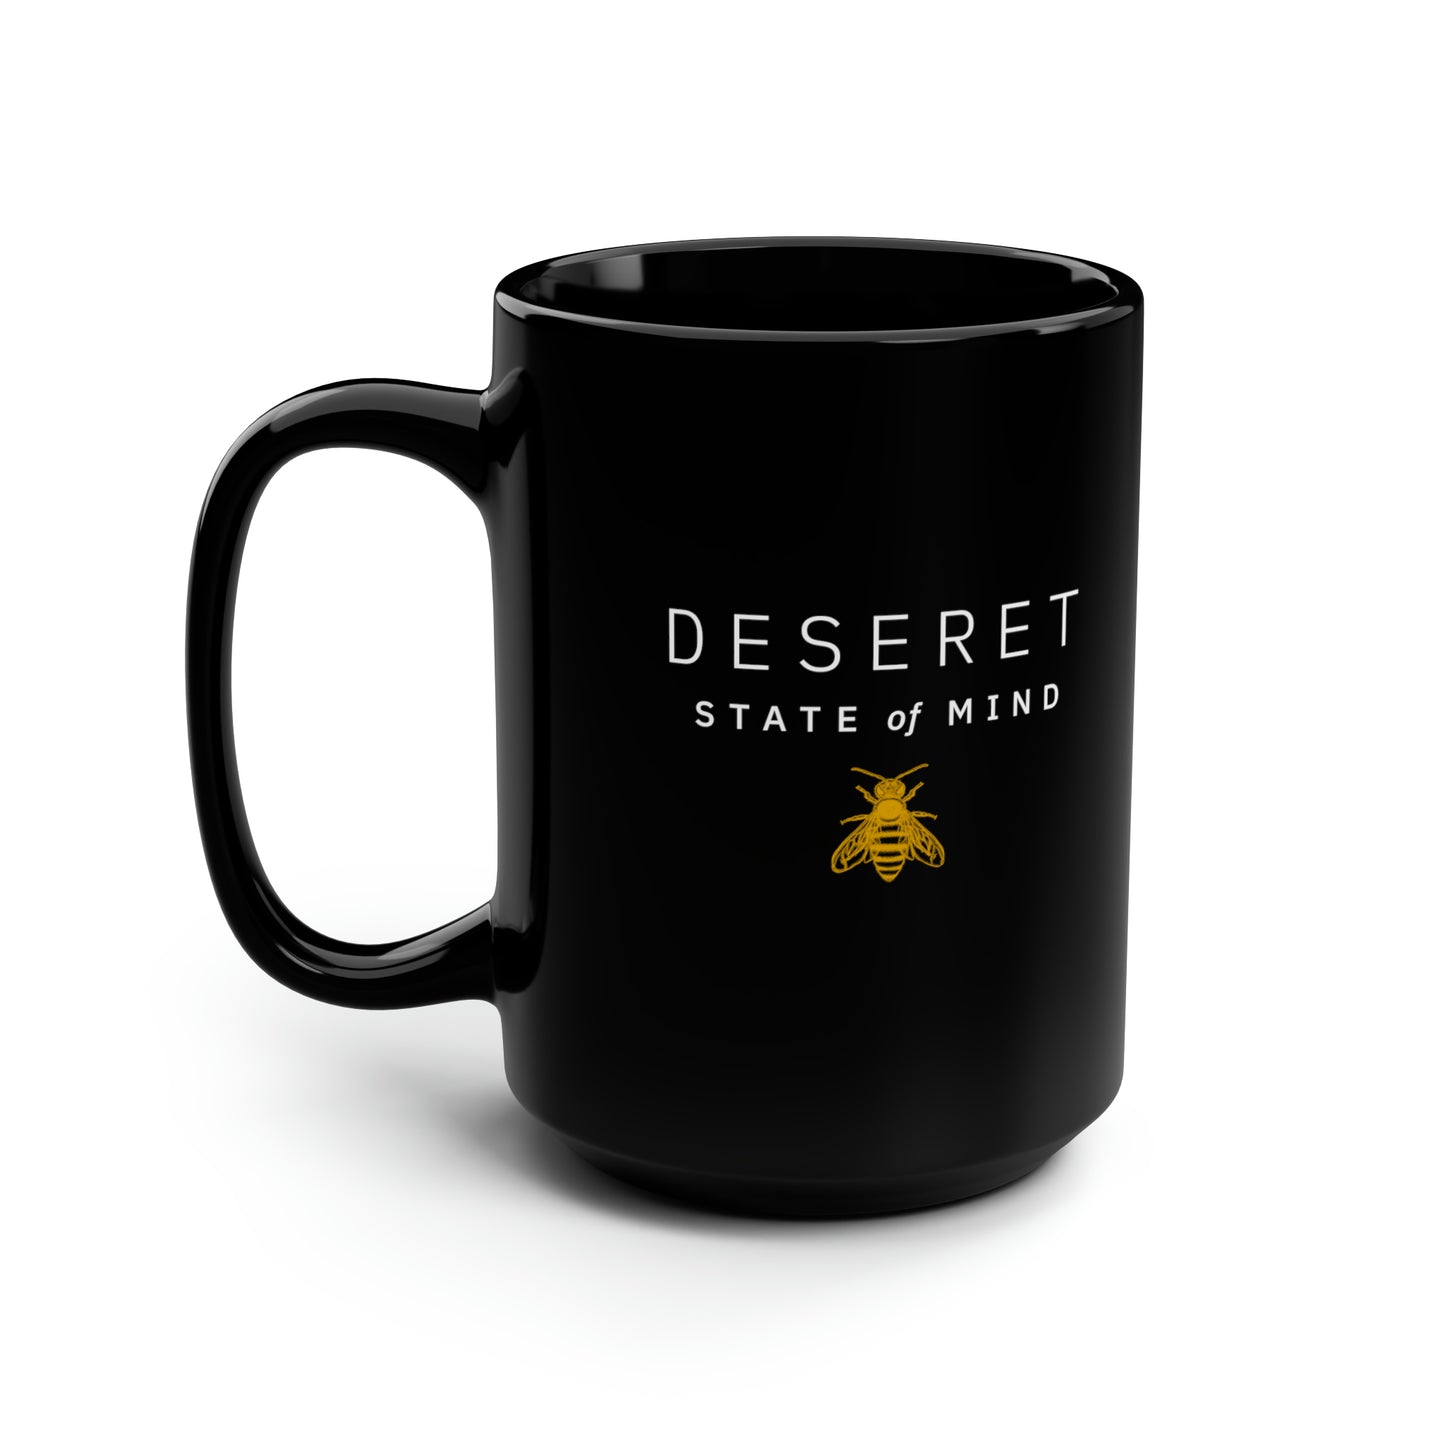 Deseret State of Mind - Large Black 15oz Mug